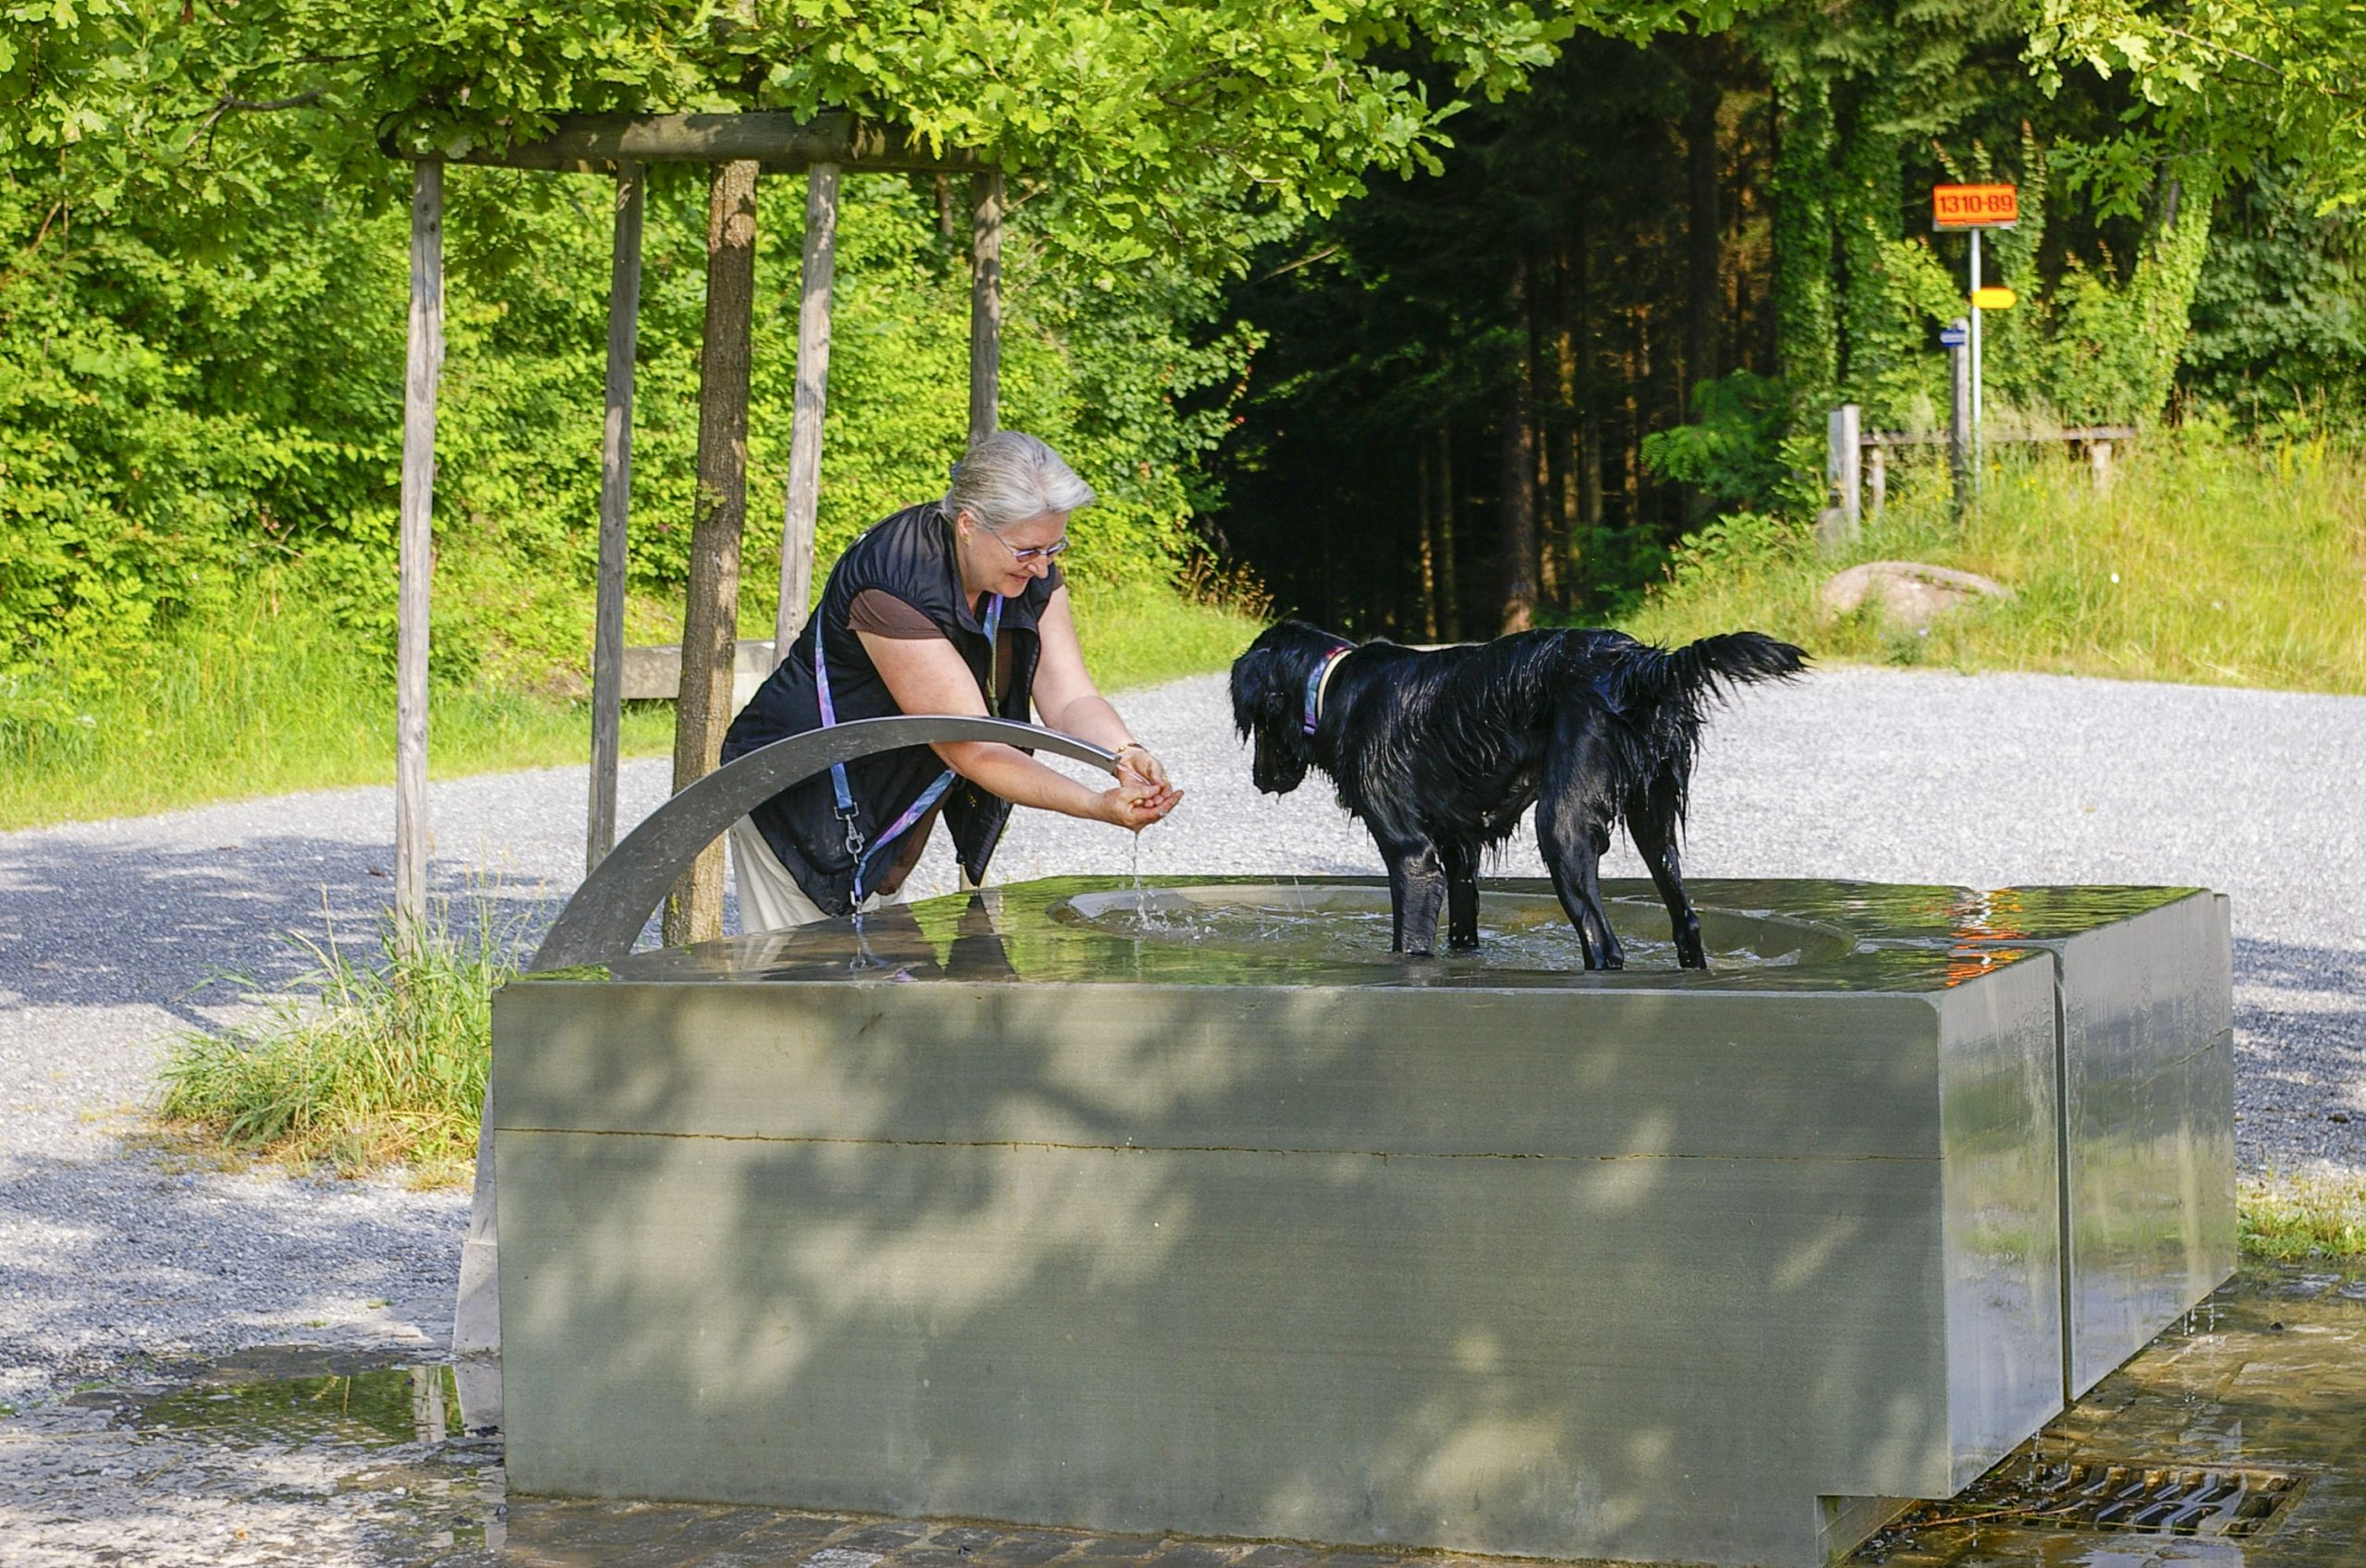 Frau beim Händewaschen am Brunnen und schwarzer Hund, der mit seinen vier Pfoten im Brunnen steht